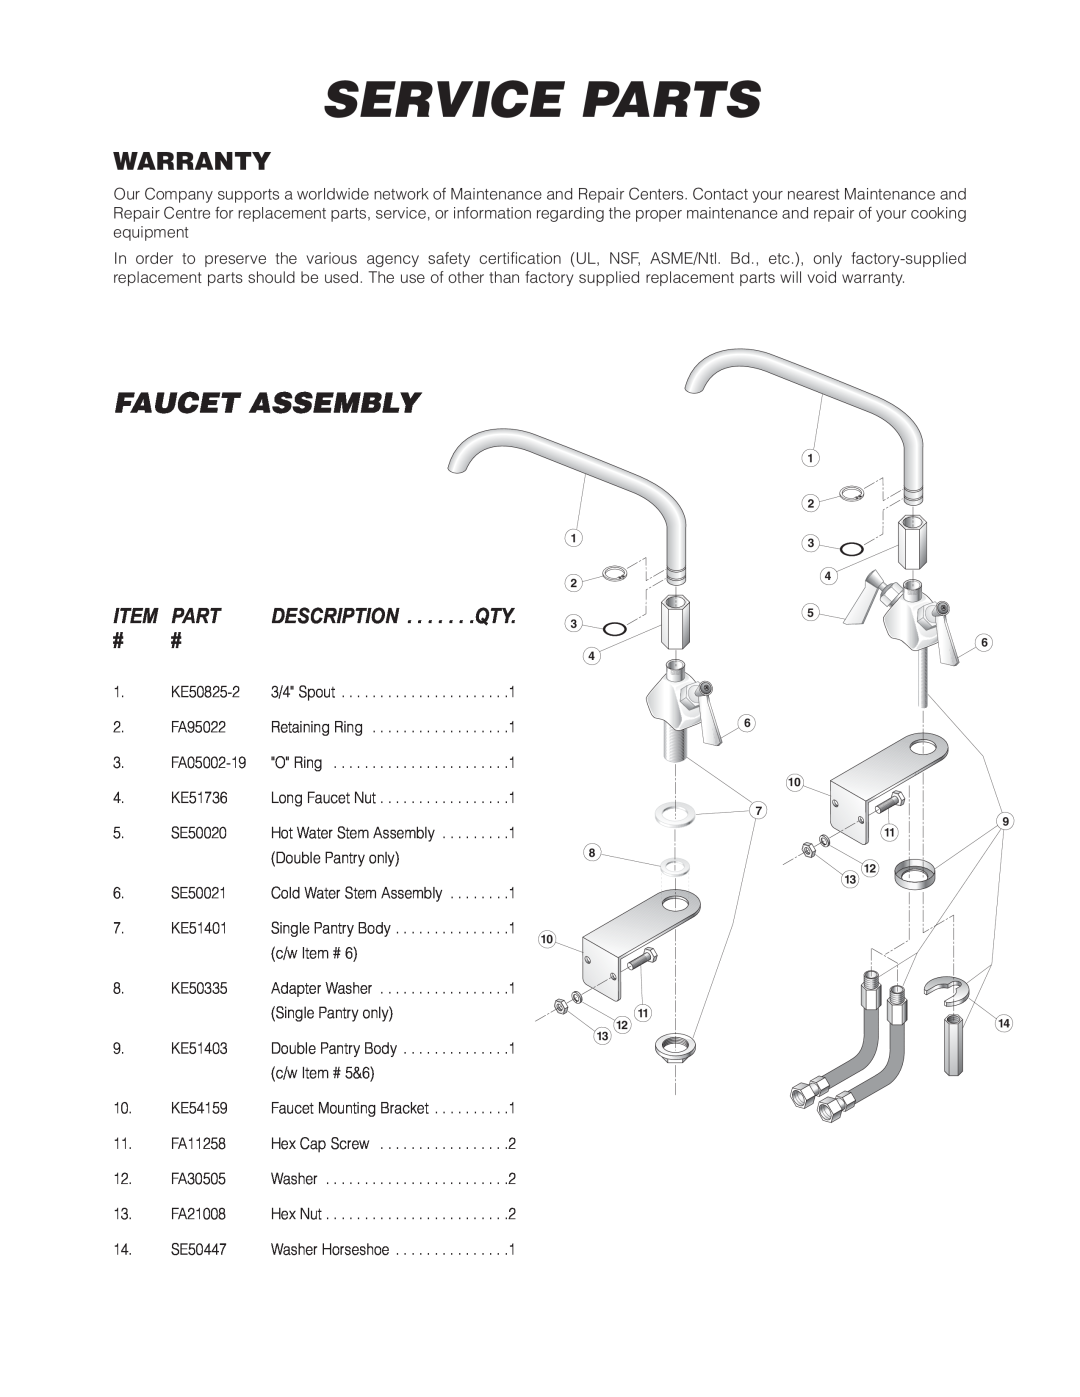 Cleveland Range KGT-6-T, KGT-12-T manual Service Parts, Faucet Assembly, Warranty, Description 